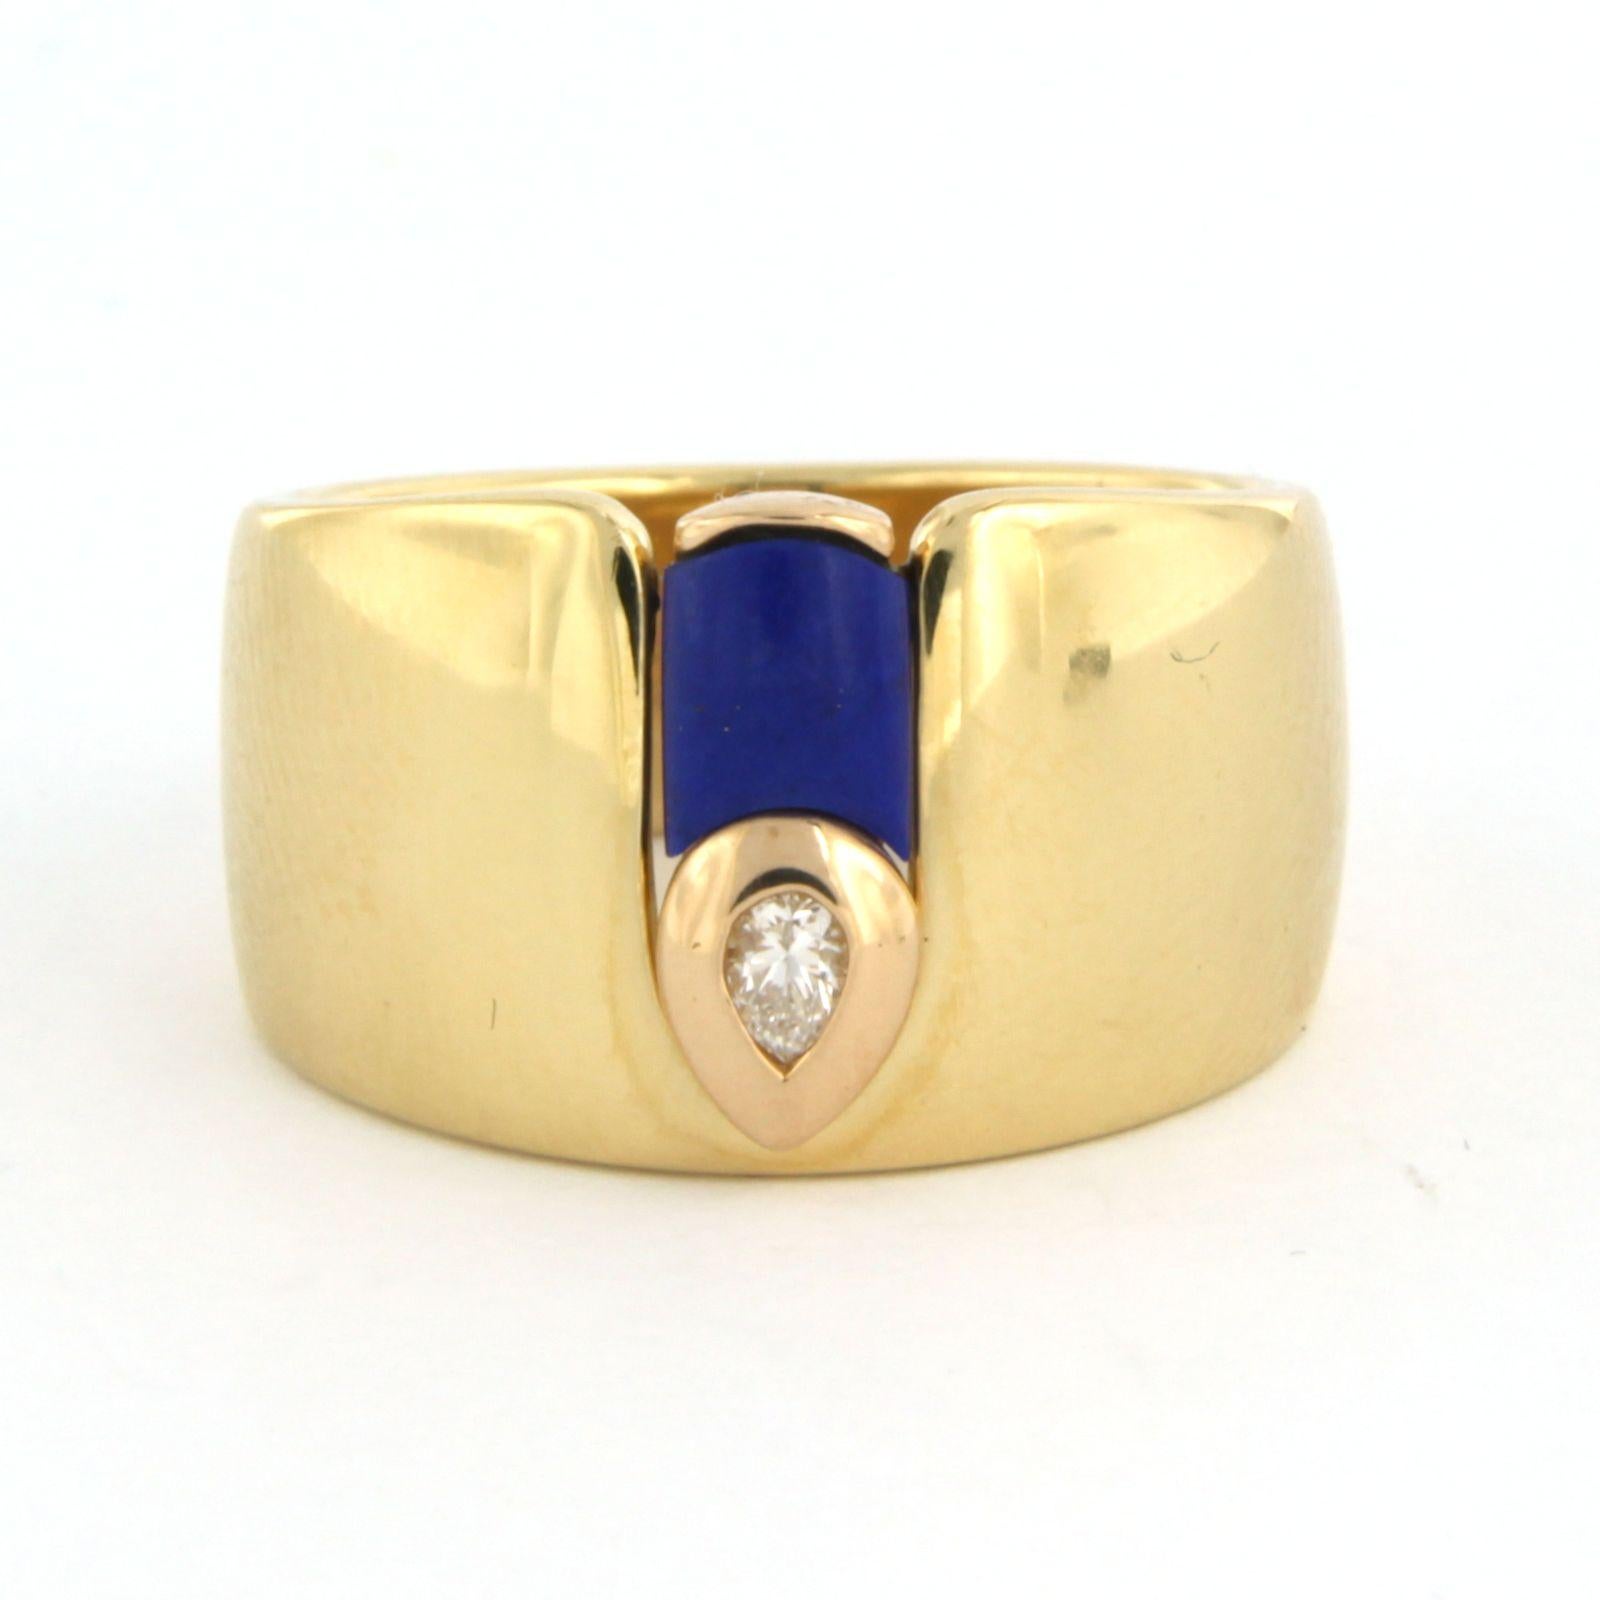 Ring aus 18k Gelbgold, besetzt mit einem Lapislazuli und einem Diamanten im Birnenschliff 0,07 crt F/G VS/SI - Ringgröße U.S. 7 - EU. 17.25 (54)

detaillierte Beschreibung:

Die Spitze des Rings ist 1,2 cm breit und 3,7 mm hoch.

Ringgröße U.S. 7 -